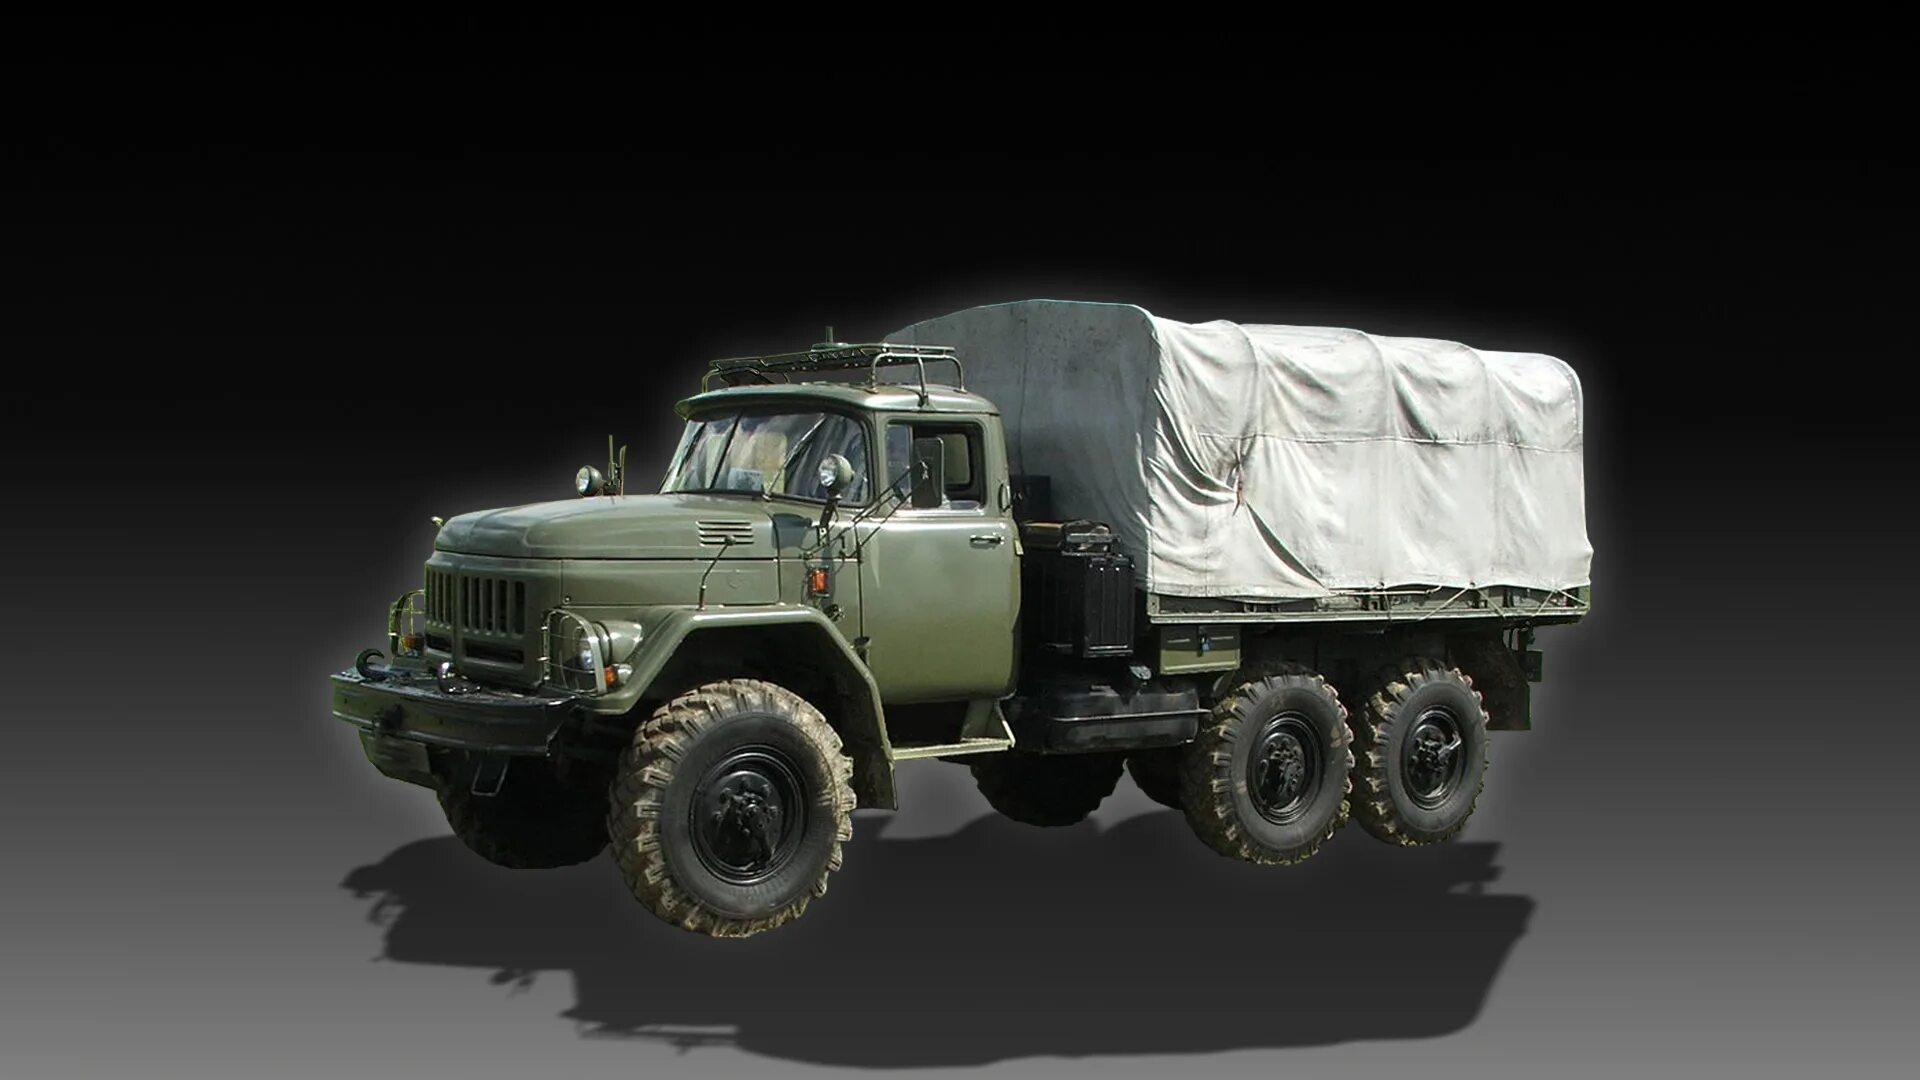 Покажи зил 131. ЗИЛ-131 грузовой автомобиль. ЗИЛ 131 военный. ЗИЛ-131 грузовой военный. Грузовик ЗИЛ 131 армейский.